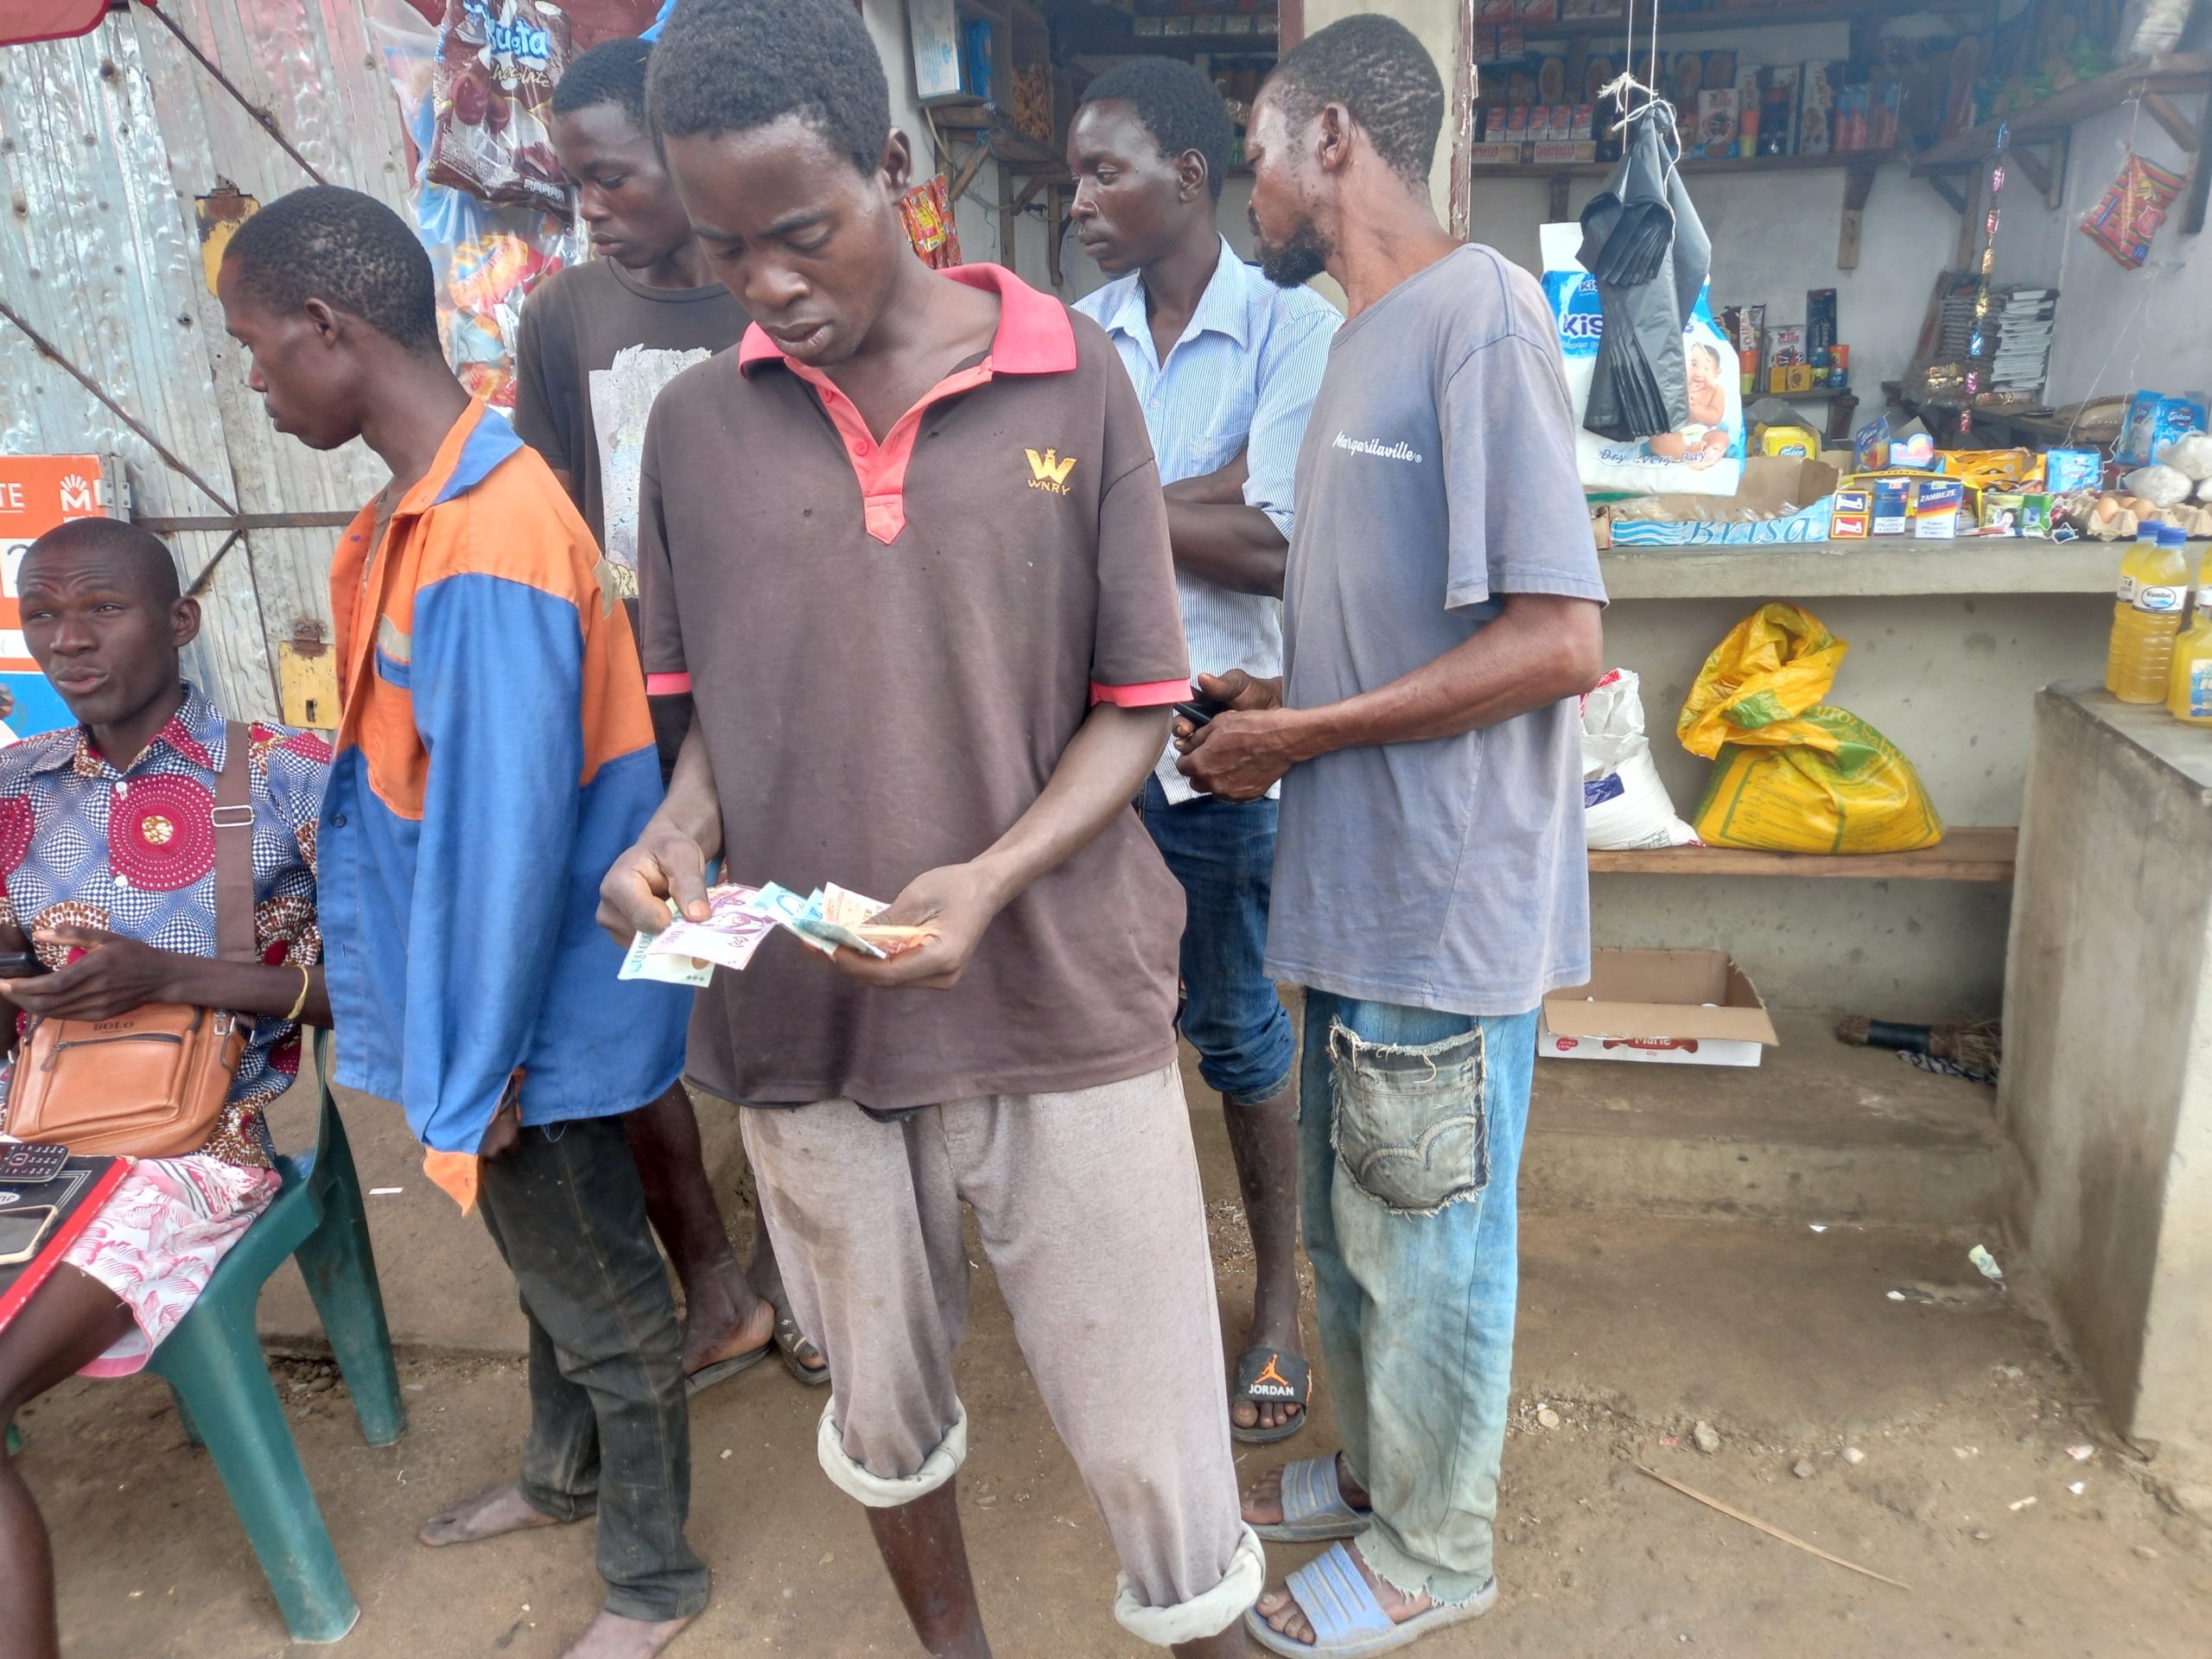 Lucas recieving a cash transfer in Nhamatanda, Mozambique